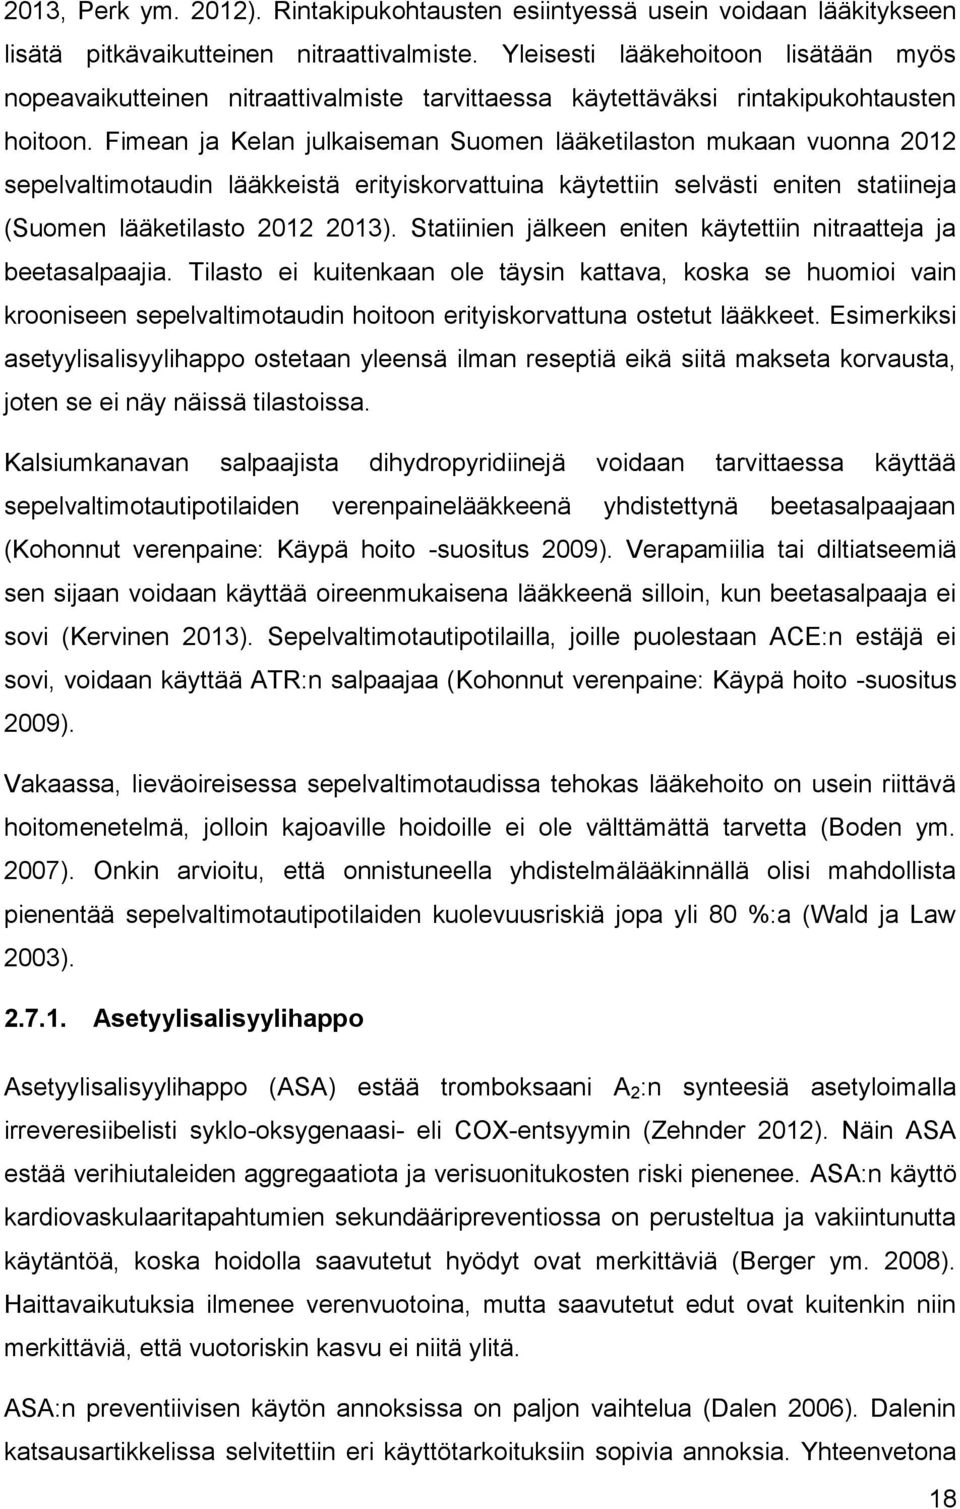 Fimean ja Kelan julkaiseman Suomen lääketilaston mukaan vuonna 2012 sepelvaltimotaudin lääkkeistä erityiskorvattuina käytettiin selvästi eniten statiineja (Suomen lääketilasto 2012 2013).